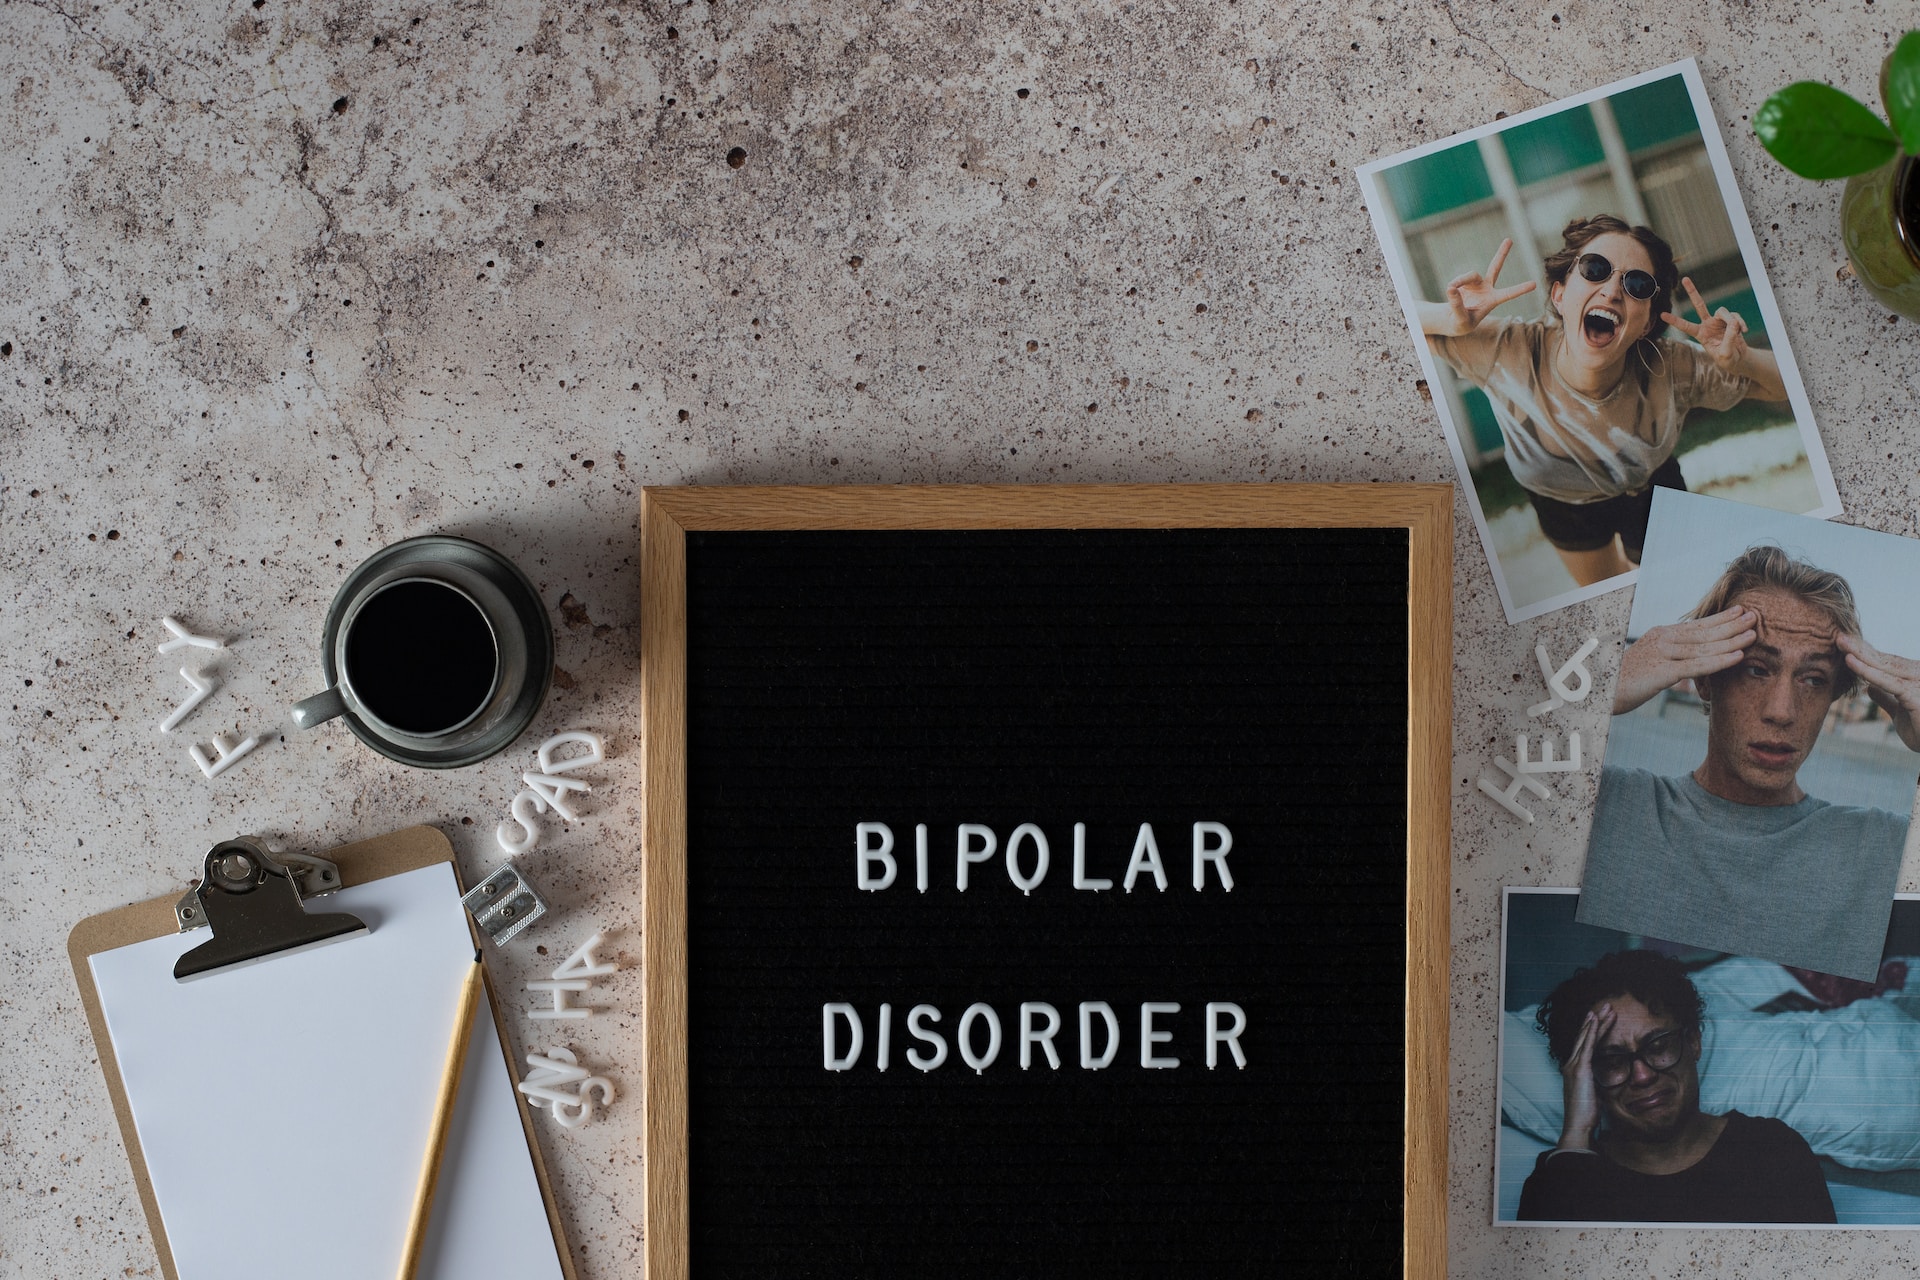 7 Cara Mengatasi Orang dengan Gangguan Bipolar